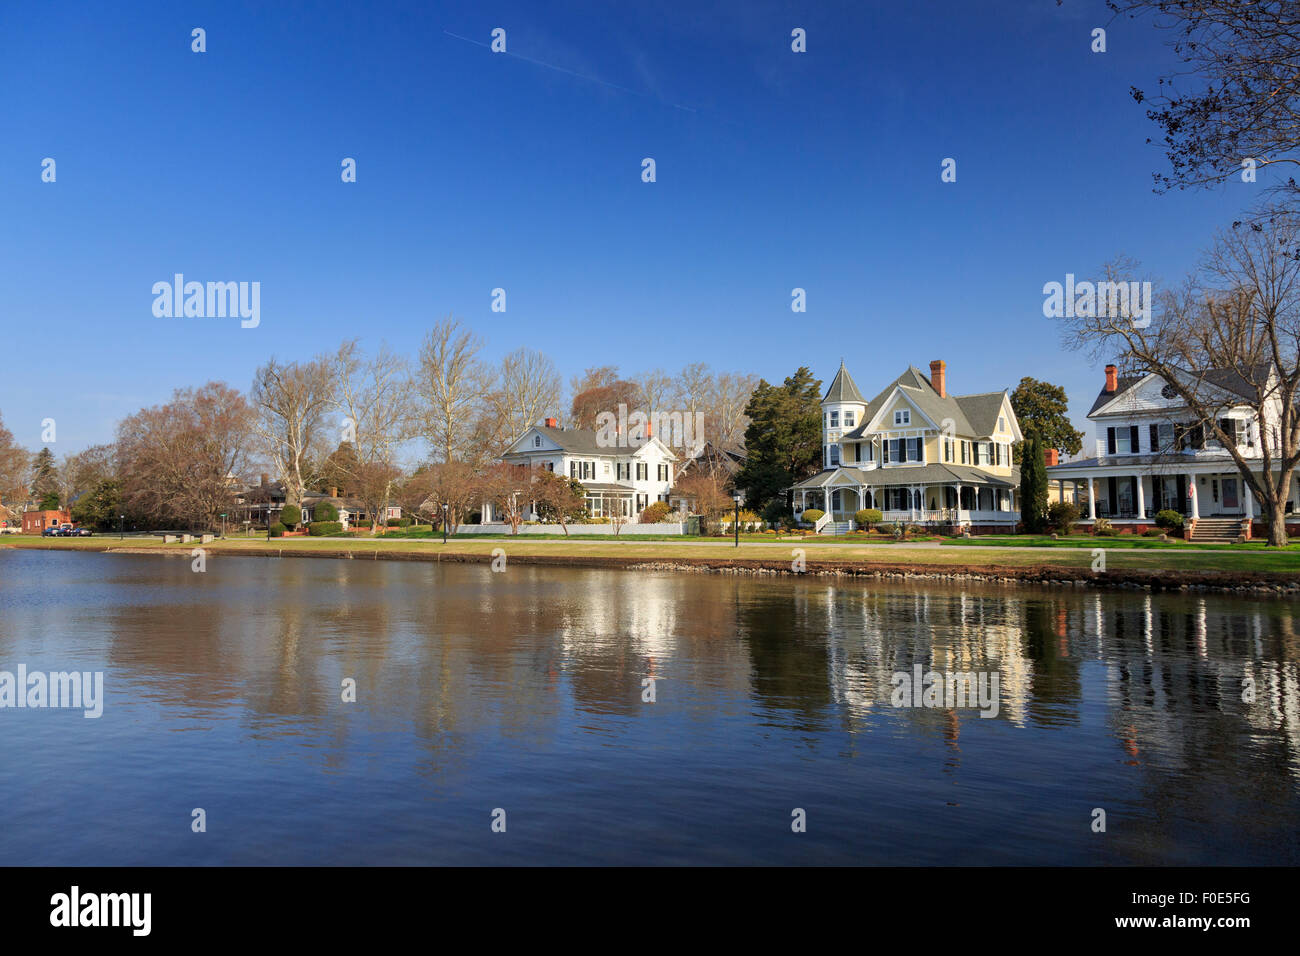 Homes along waterfront, Edenton, North Carolina, USA Stock Photo